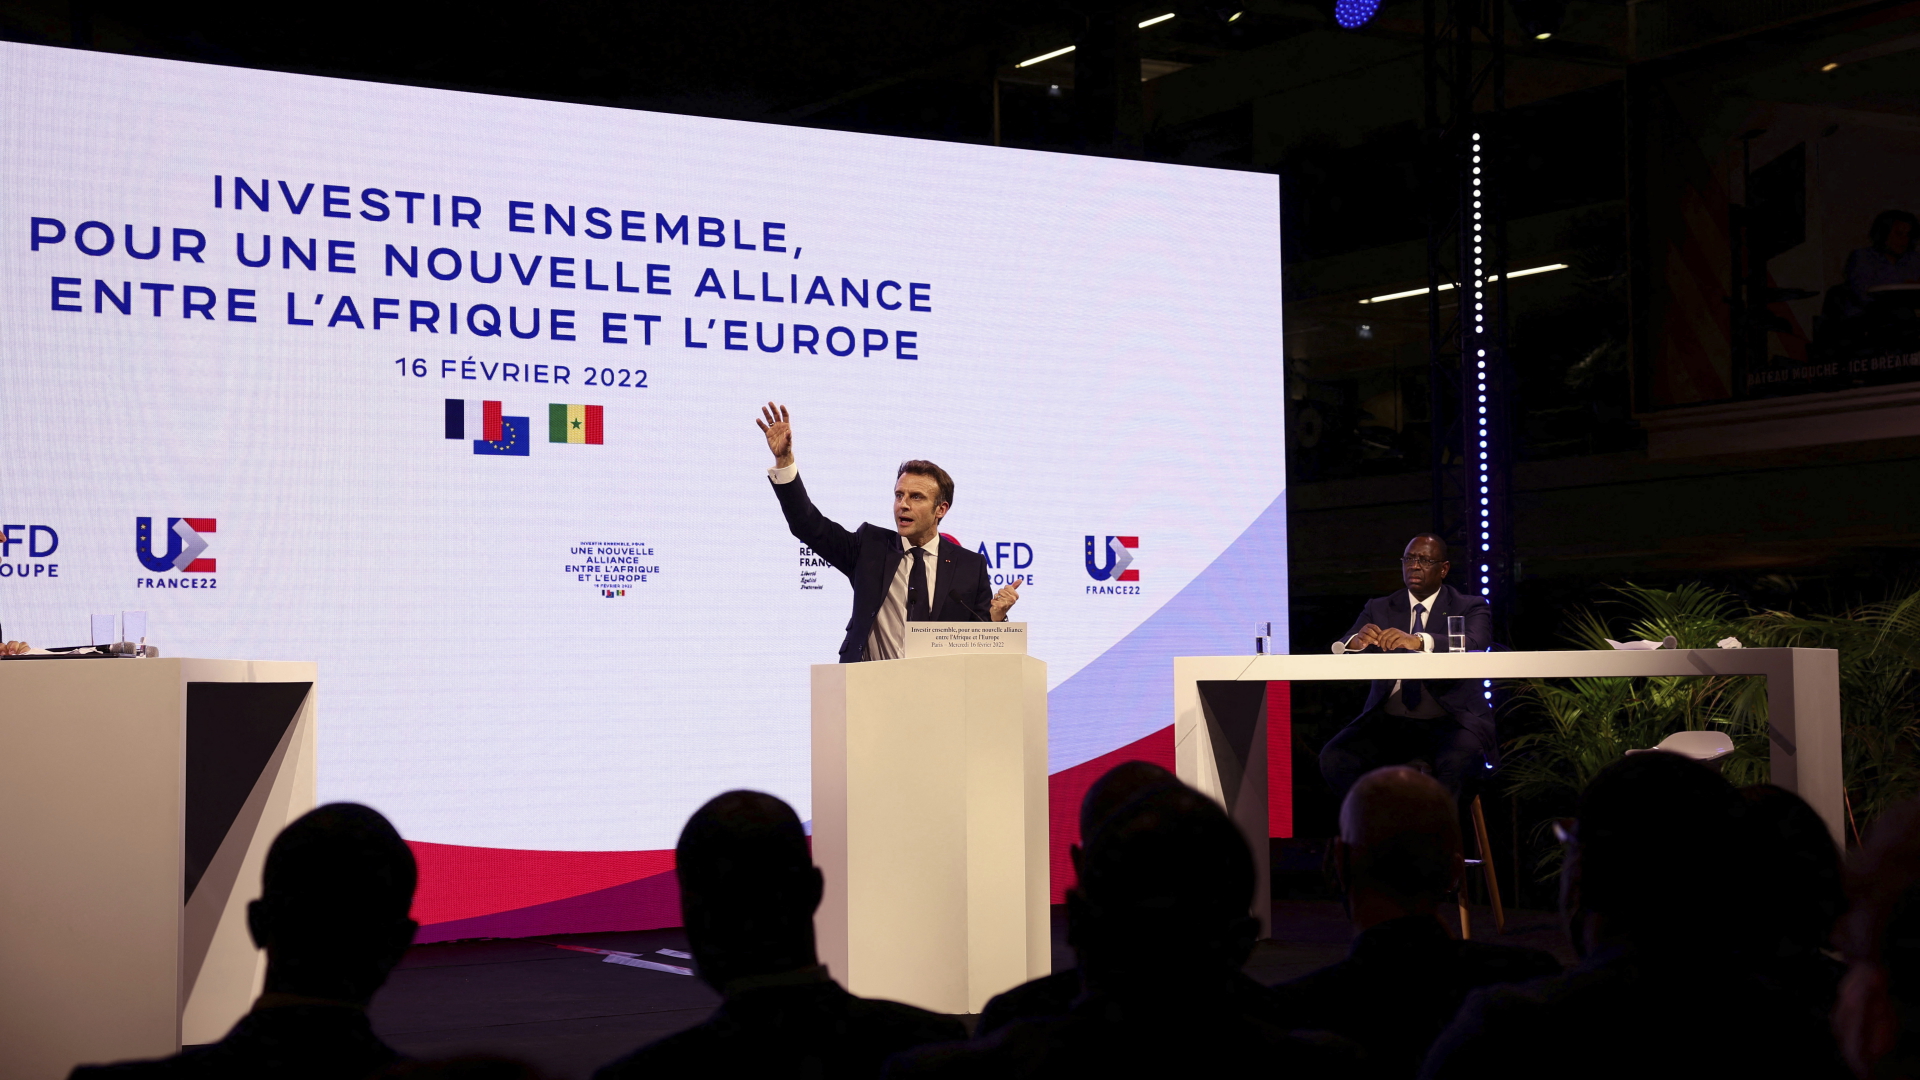 Emmanuel Macron, Präsident von Frankreich, spricht und gestikuliert während der Konferenz "Investing together, for a new alliance between Africa and Europe" (dt. Gemeinsam investieren, für eine neue Allianz zwischen Afrika und Europa) die von der French Development Agency auf dem Startup-Campus stattfindet. | dpa